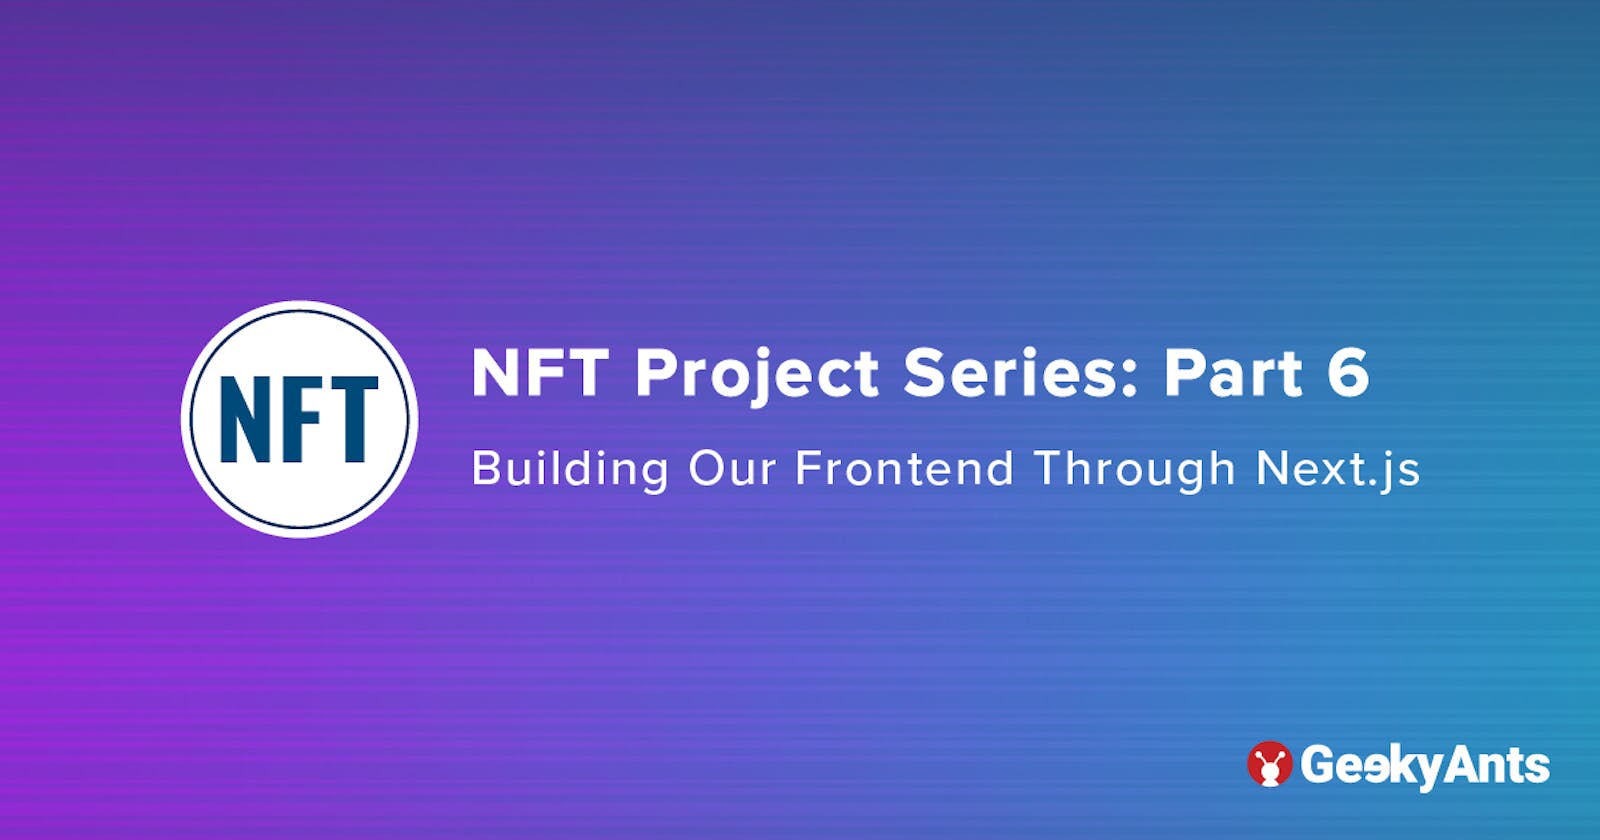 NFT Project Series Part 6: Building Our Frontend Through Next.js